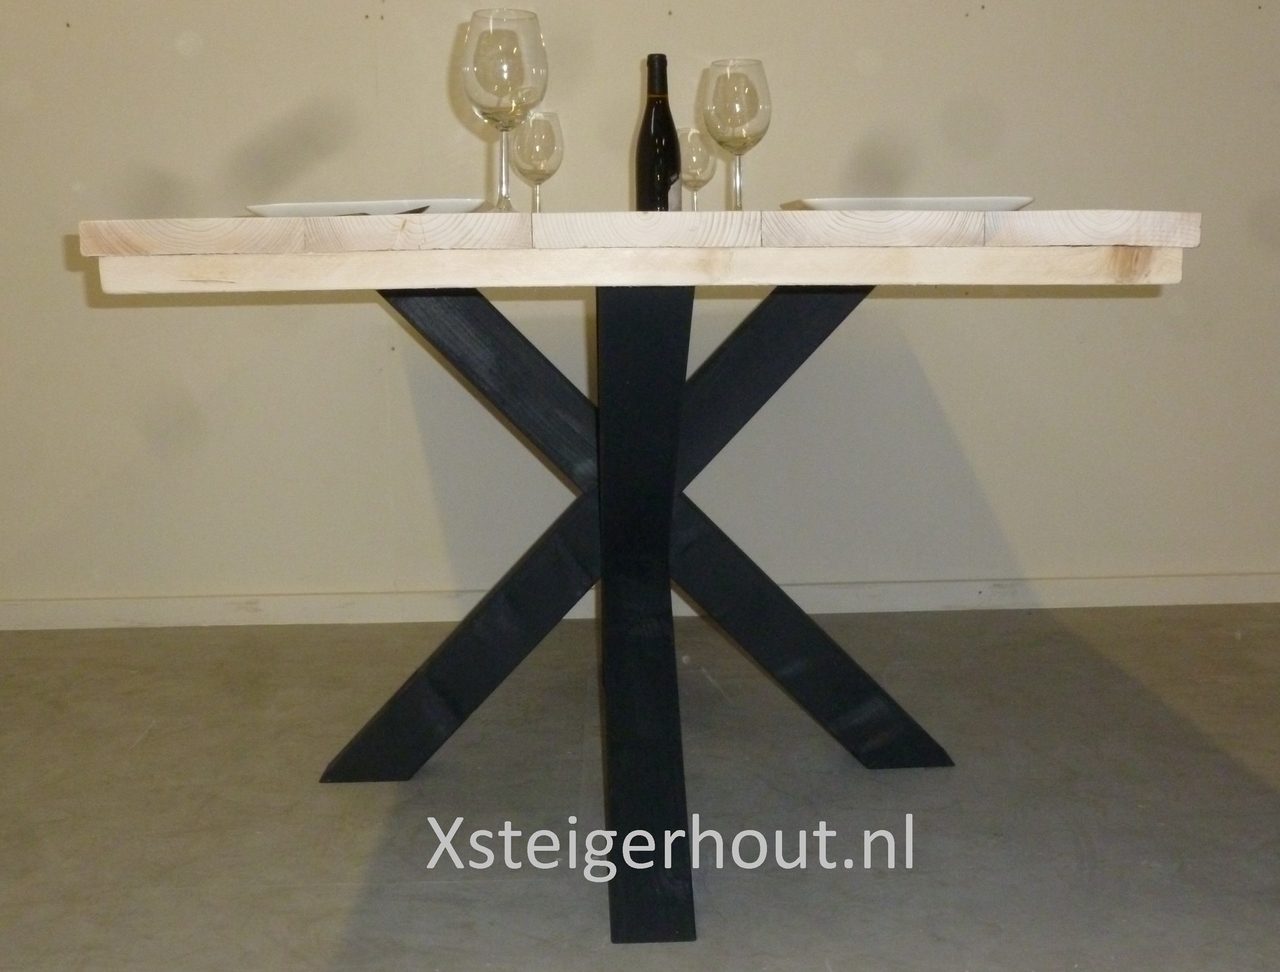 Verbazingwekkend Industriële tafel Goedkoop als bouwpakket €159,- - xsteigerhout GJ-64